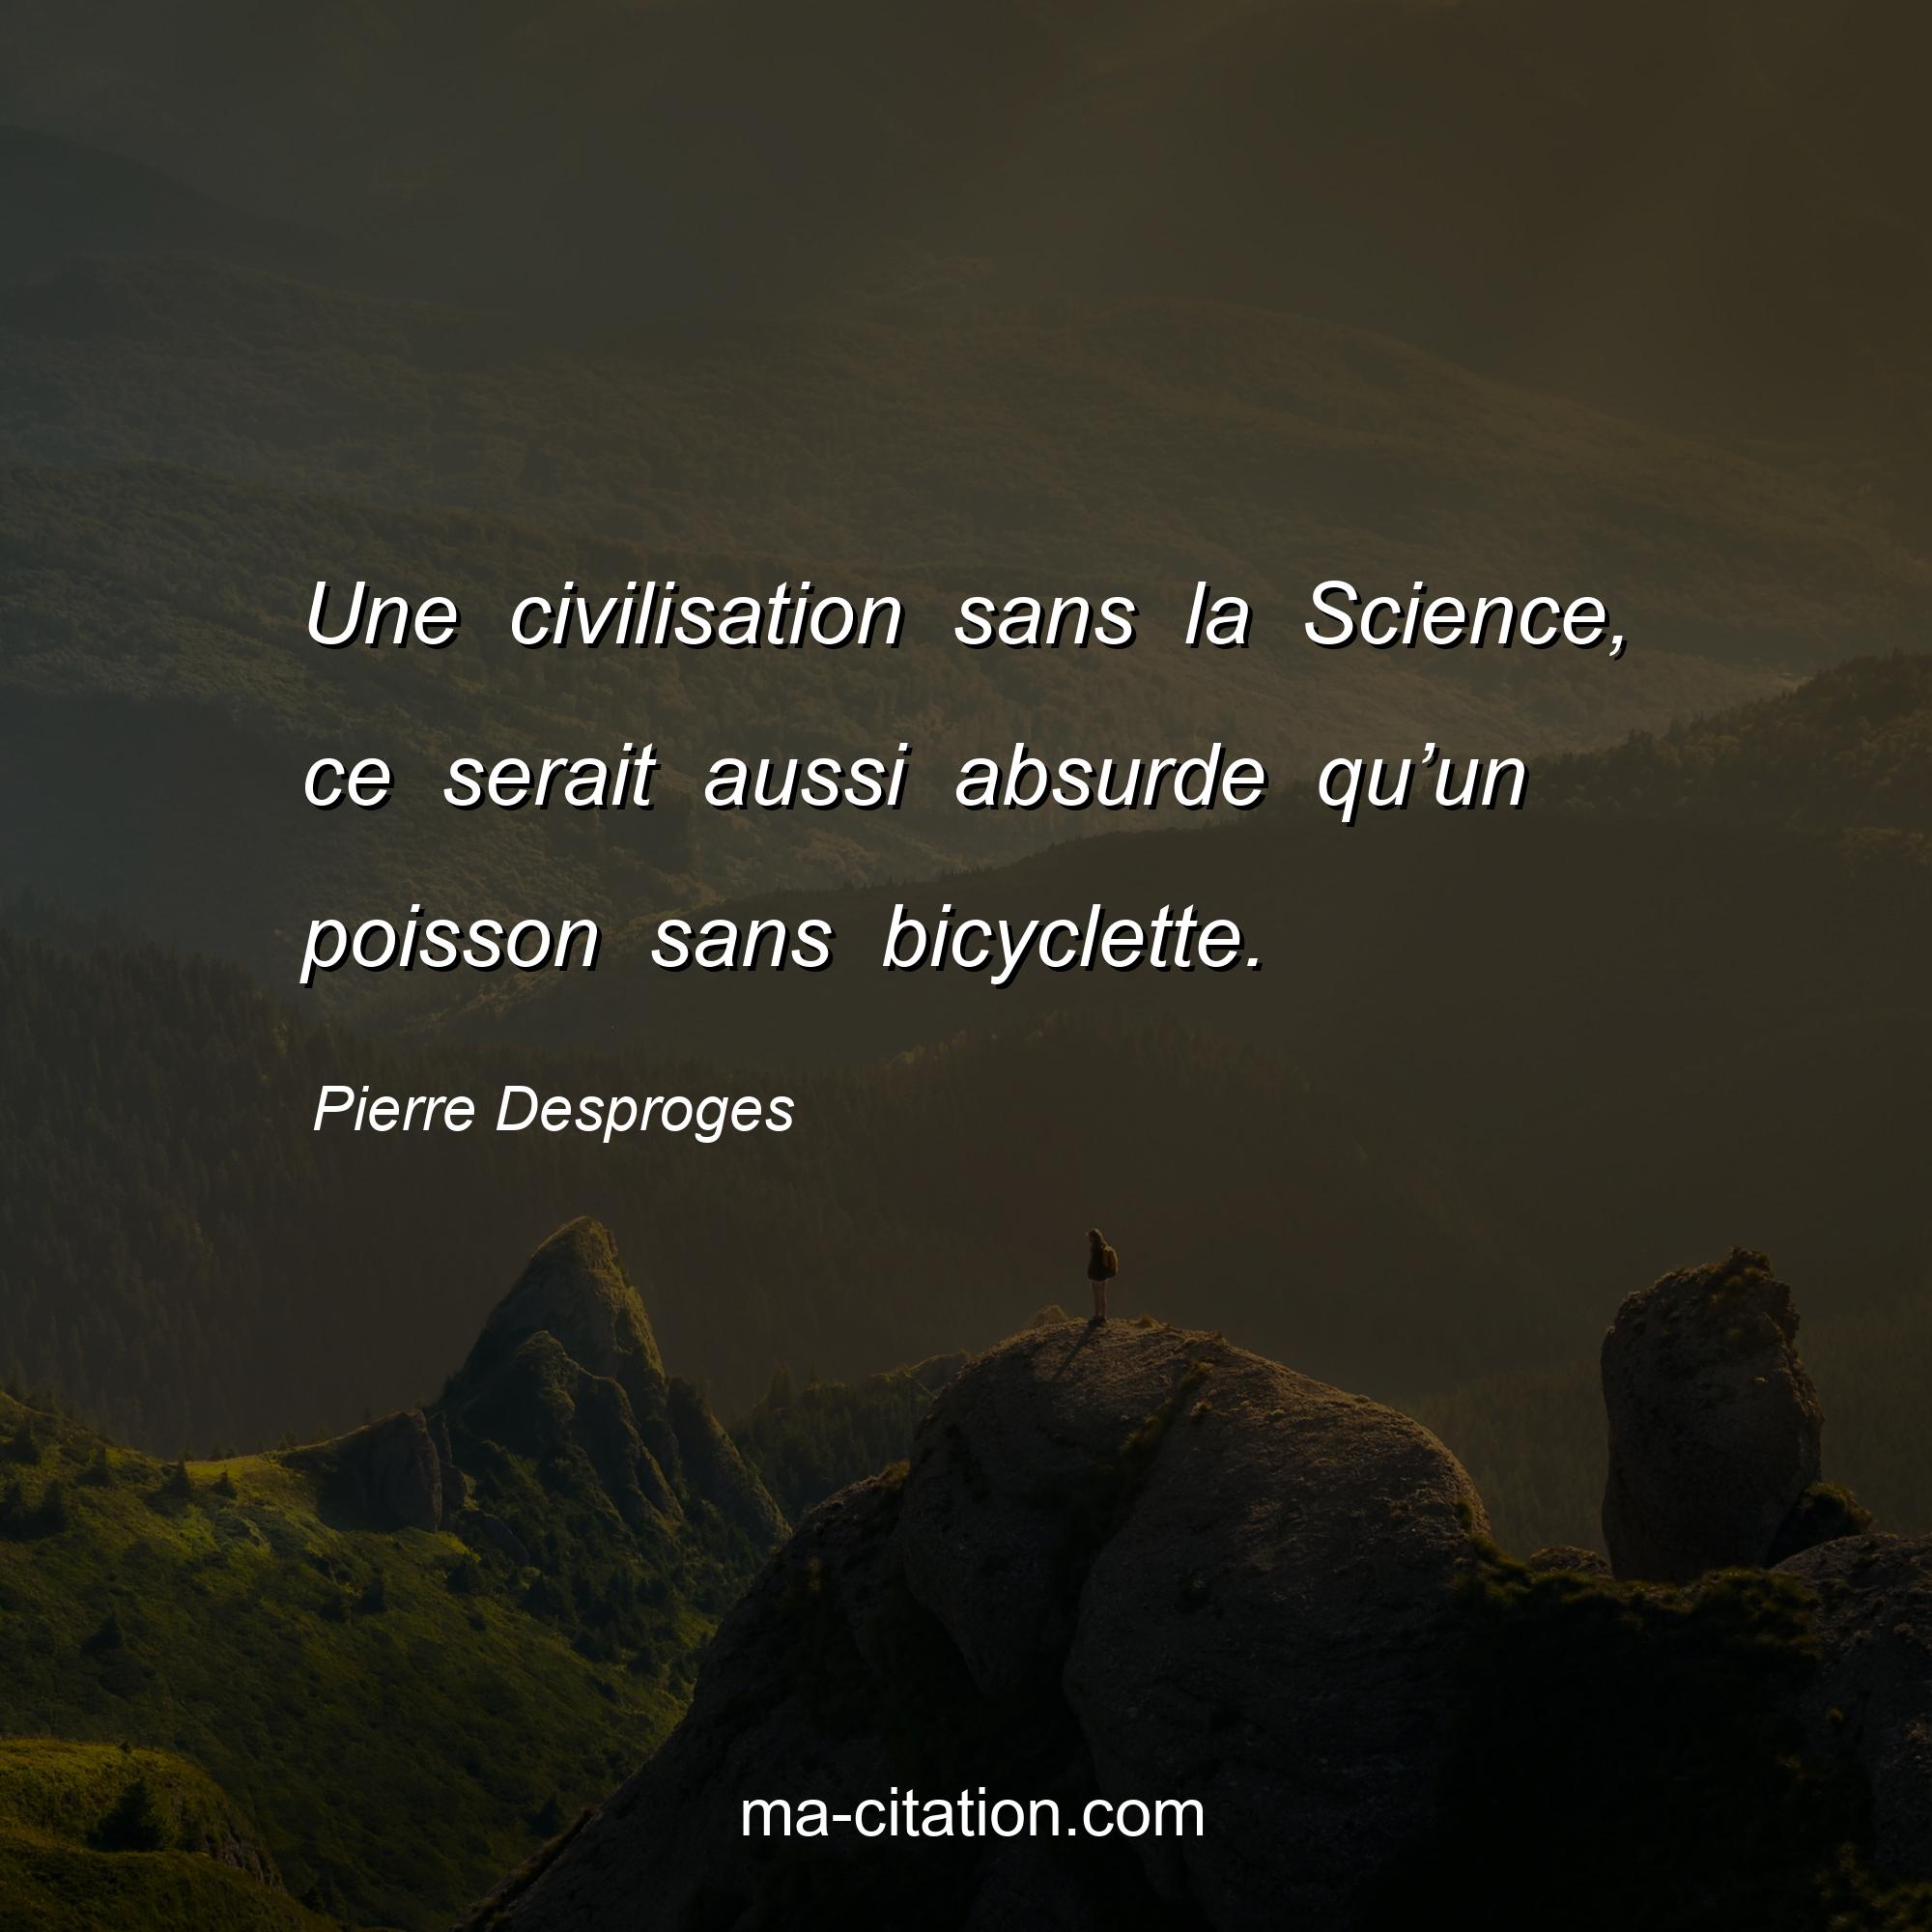 Pierre Desproges : Une civilisation sans la Science, ce serait aussi absurde qu’un poisson sans bicyclette.